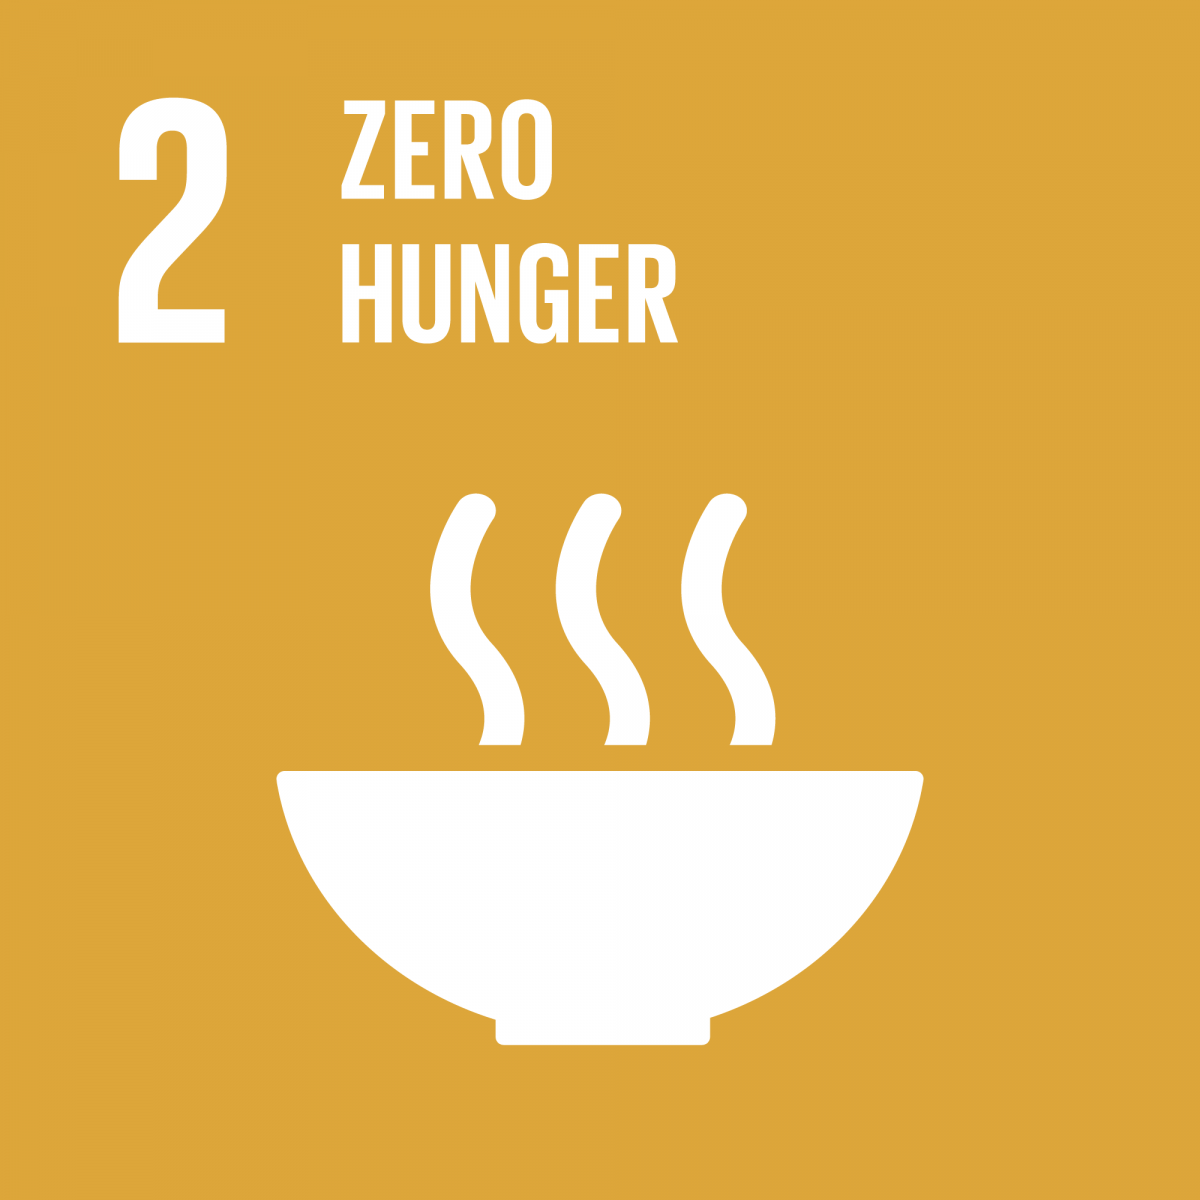 SDG 1: Zero hunger